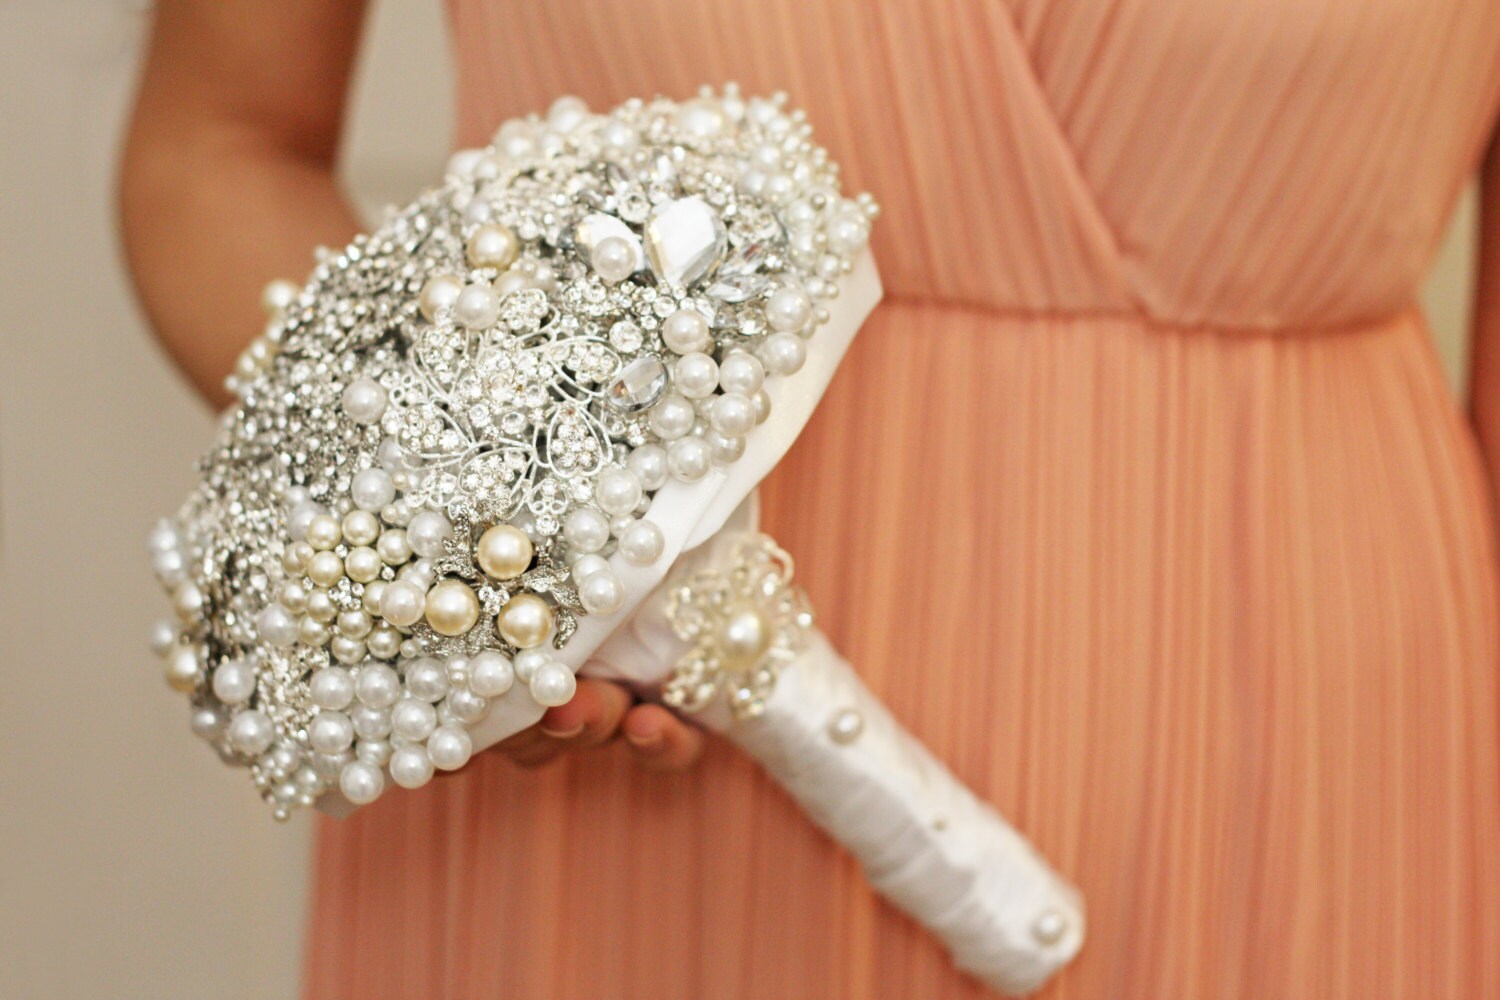 brooch bouquet, wedding bouquet, bridal bouquet, bridesmaids bouquets, wedding decor, brooch decor, brooch accessories, white wedding